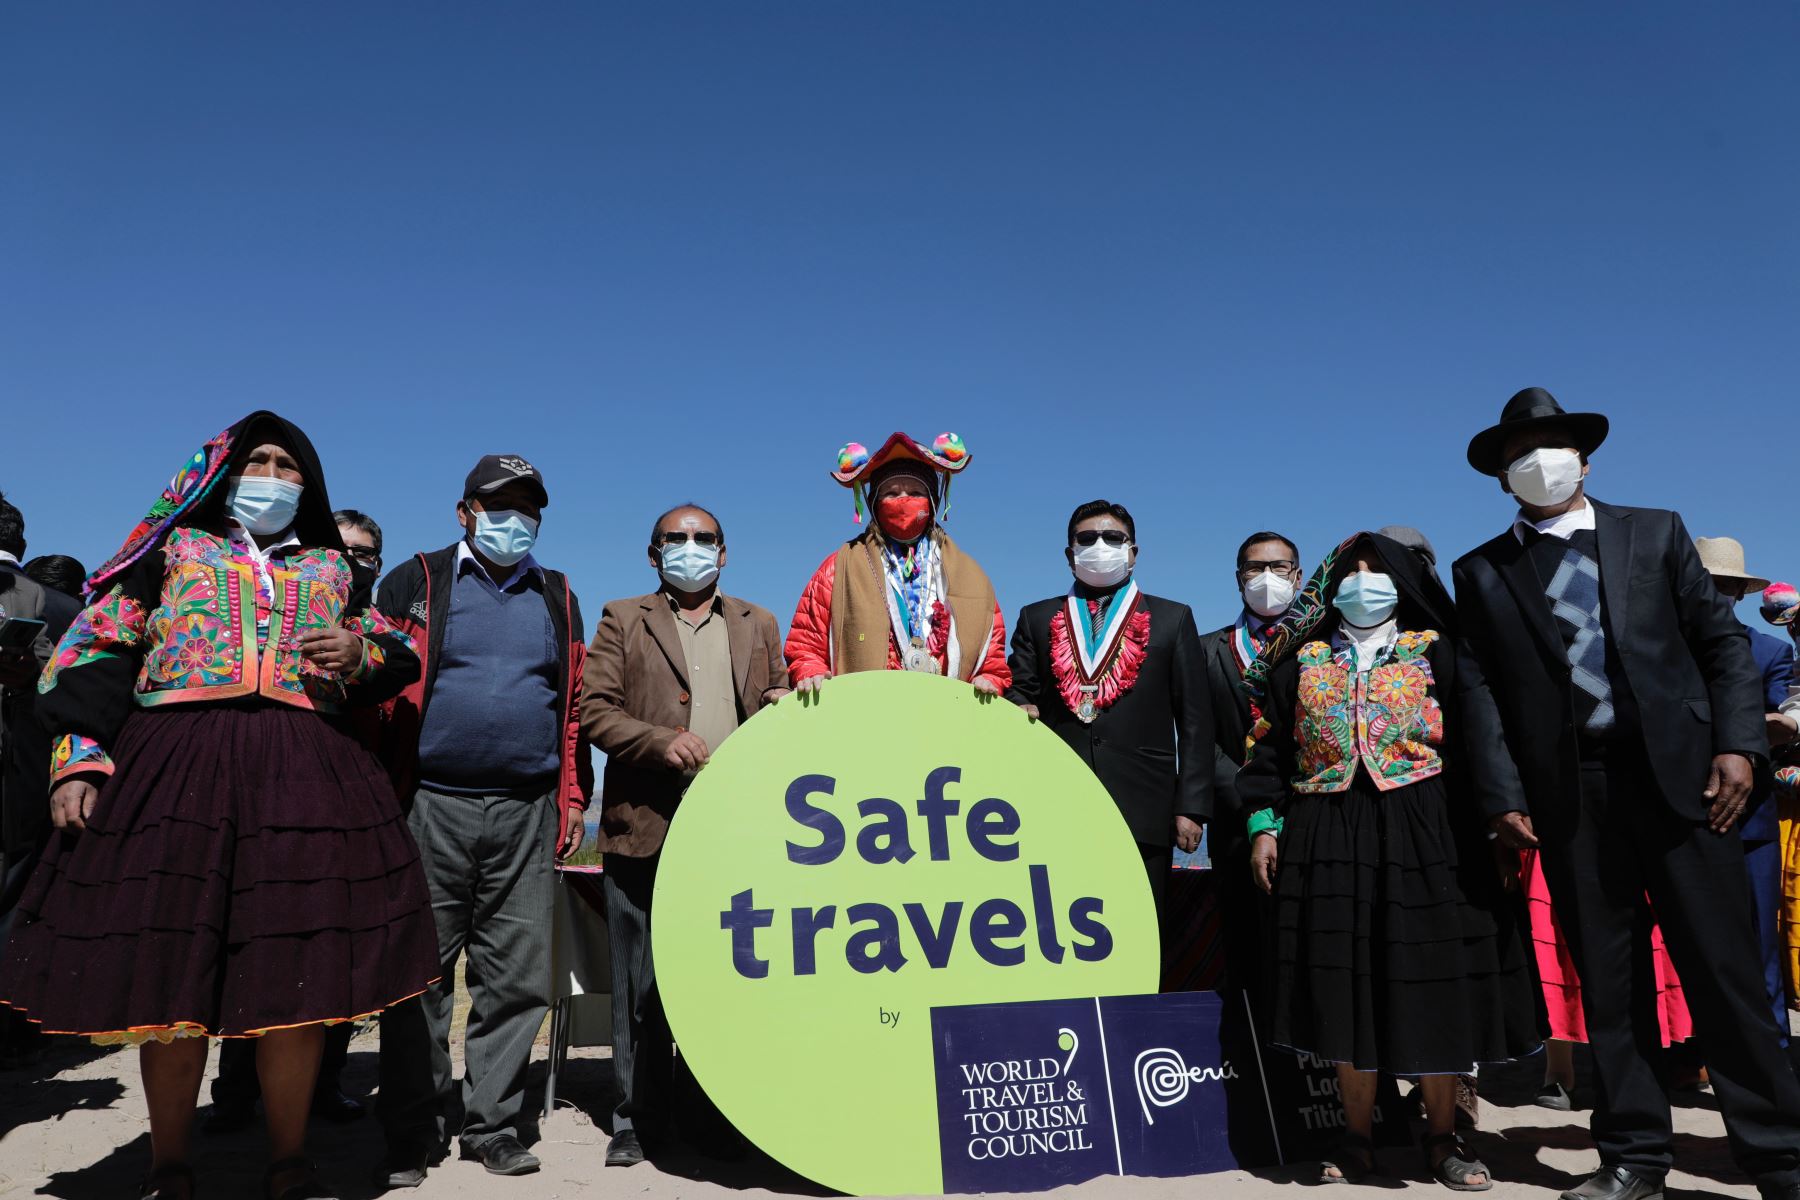 El Ministerio de Comercio Exterior y Turismo  entregó el sello internacional Safe Travels al destino Puno-Lago Titicaca. De esta manera, esta importante zona al sur del Perú se prepara para recibir a los visitantes nacionales y extranjeros.
Foto: Mincetur